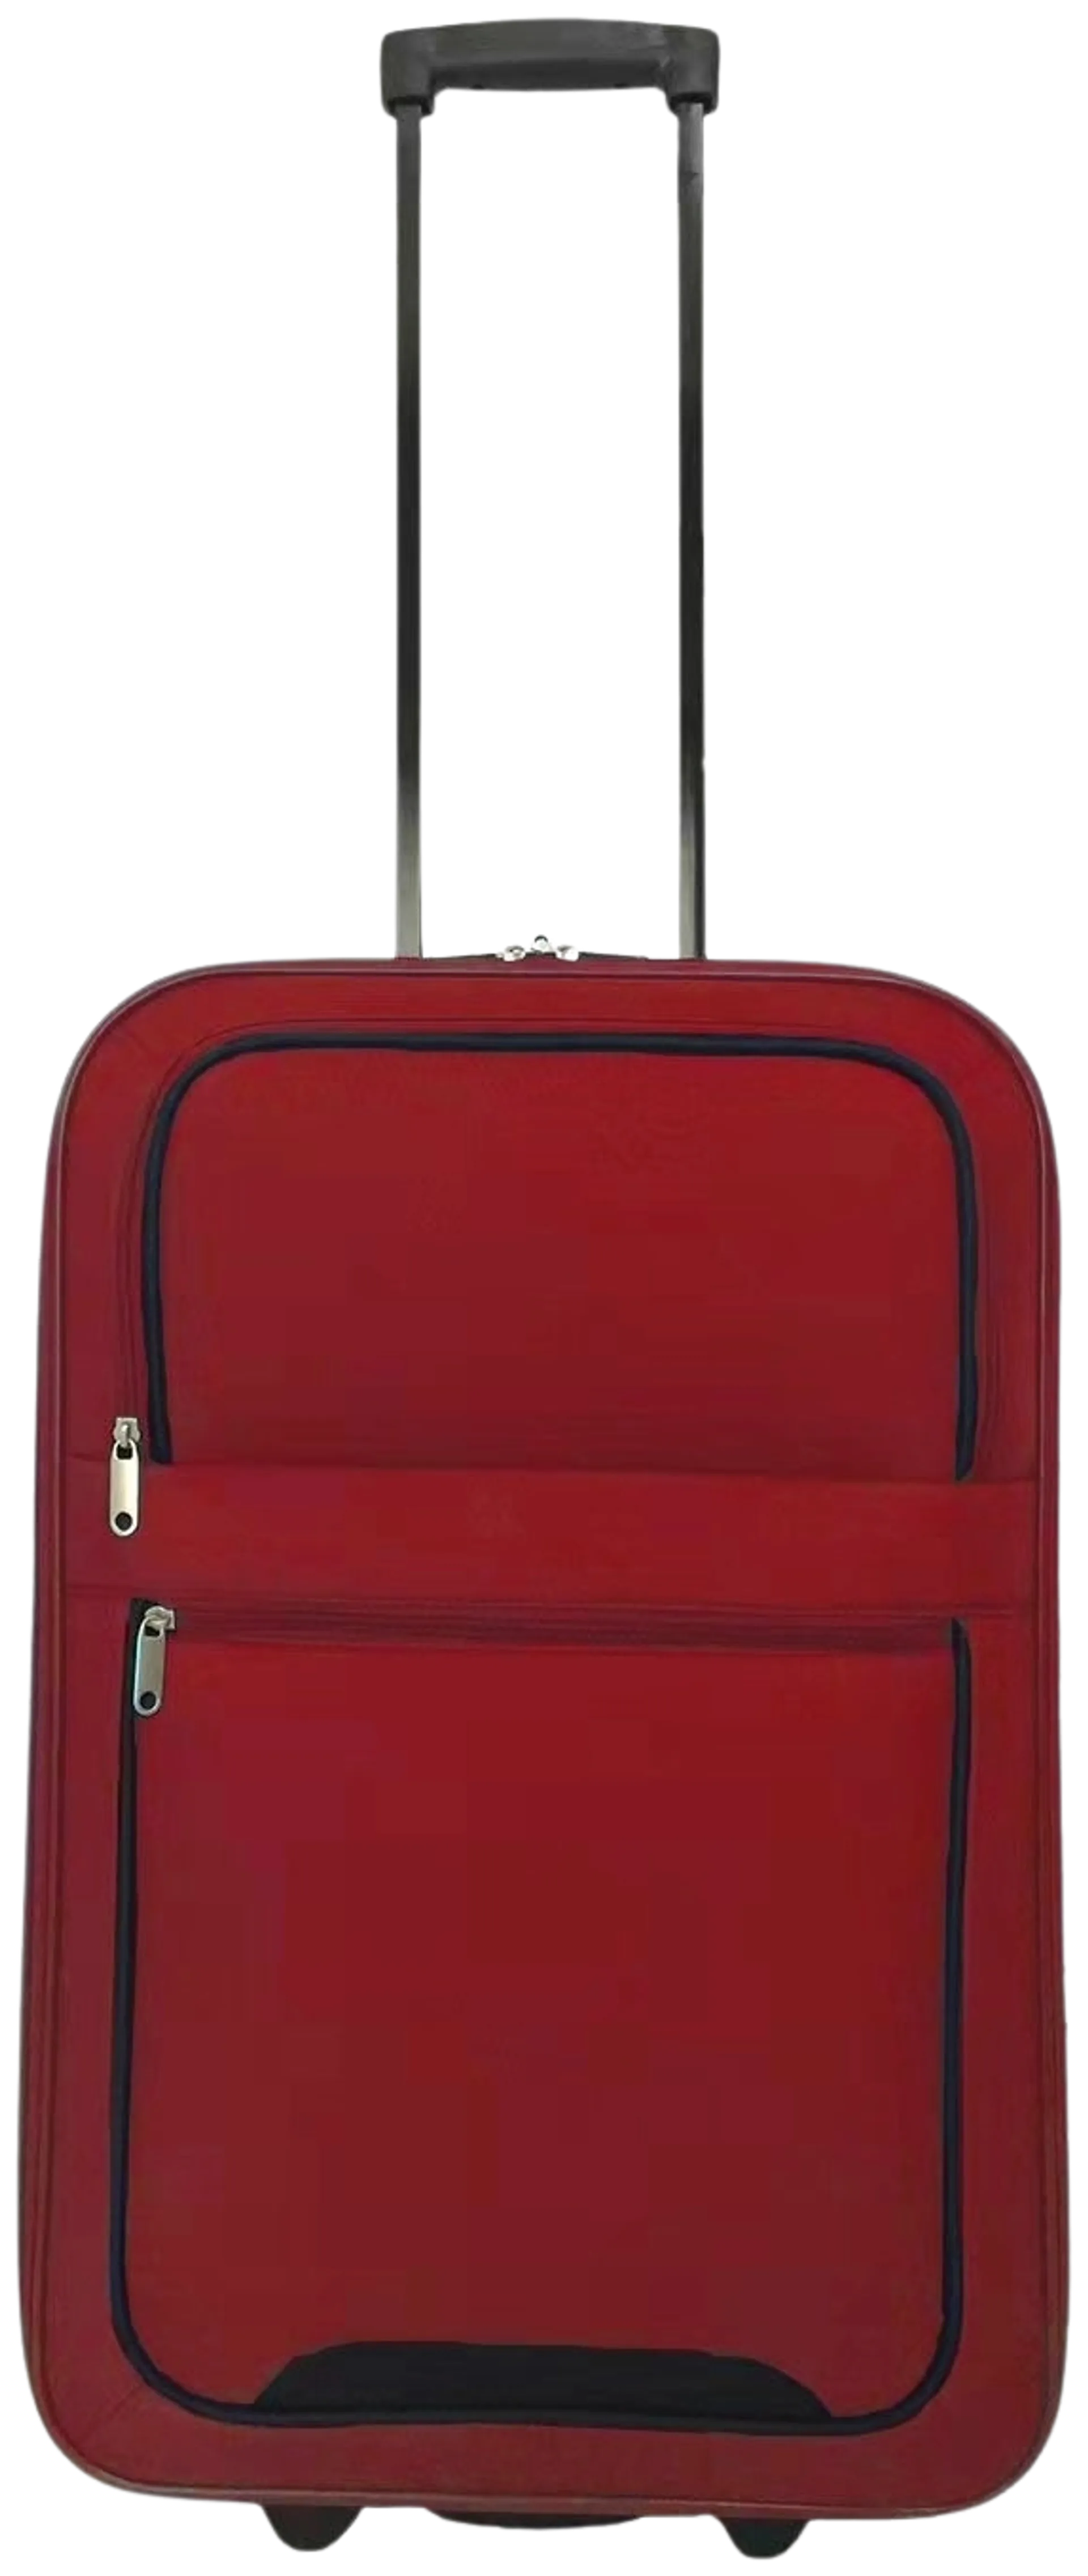 Willy matkalaukku WL20-S101 49 cm